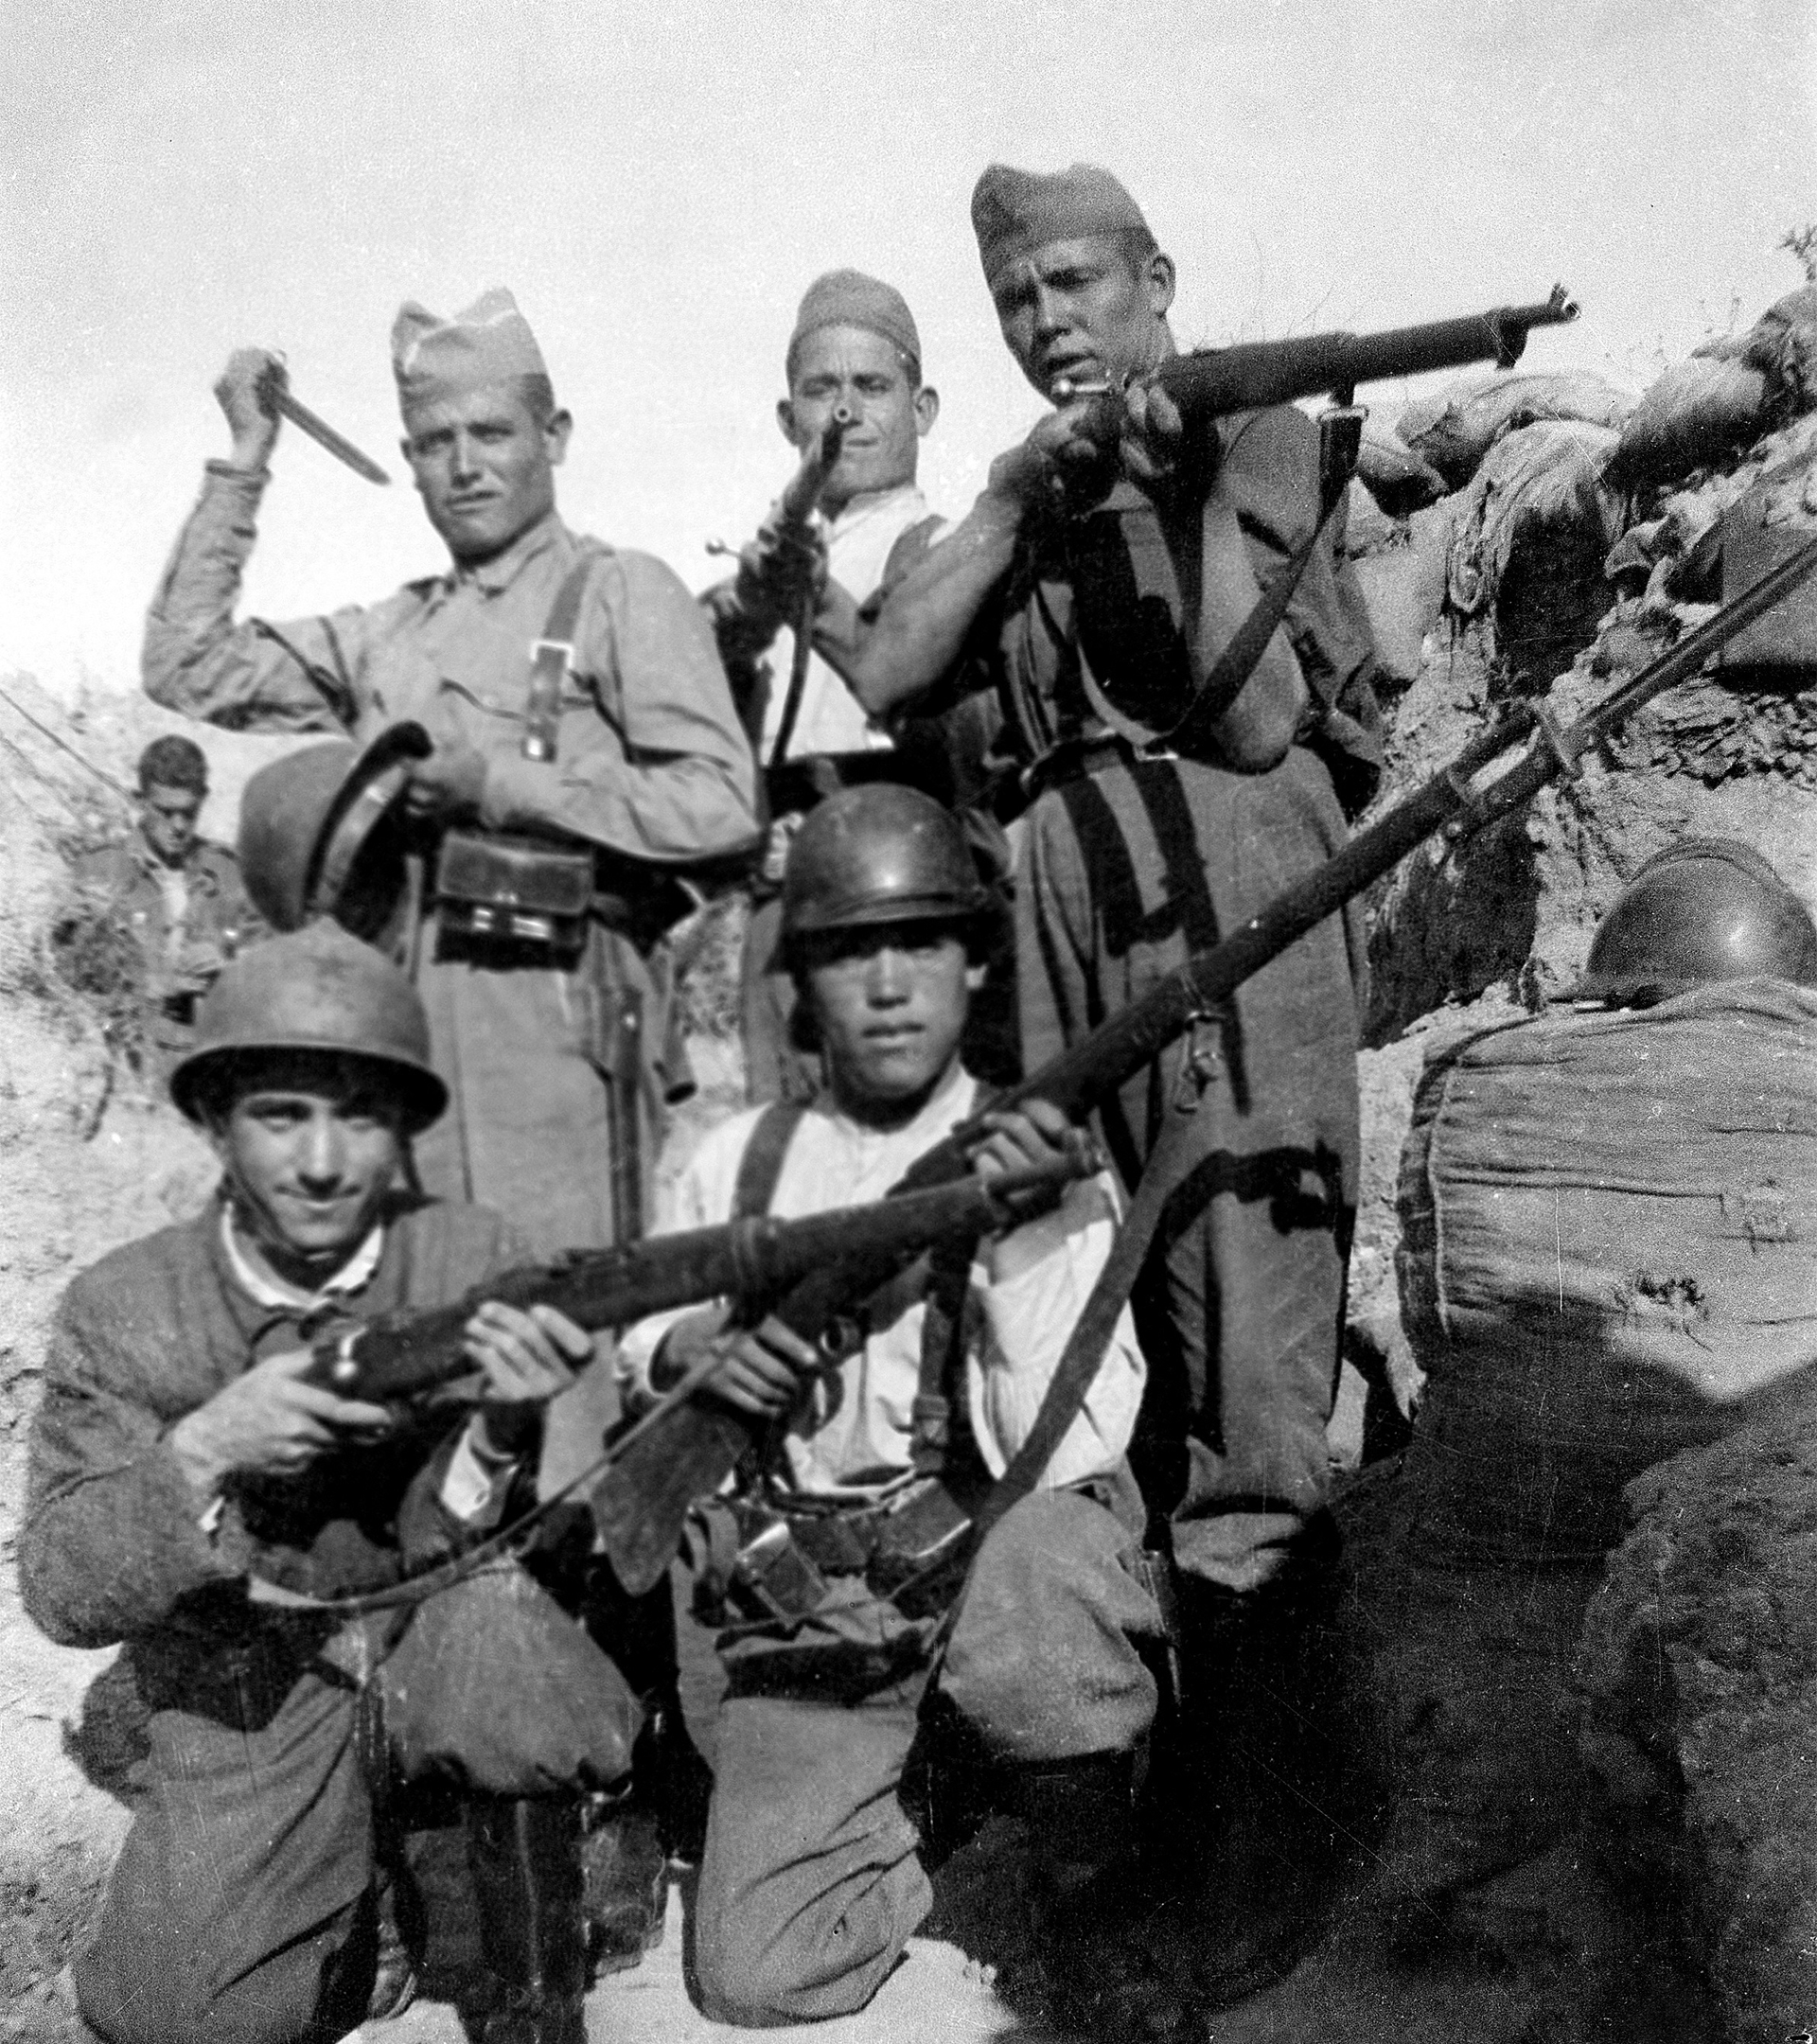 El último asalto del maquis, la guerrilla que se enfrentó a Franco: "Fueron mucho más que bandidos o bandoleros"